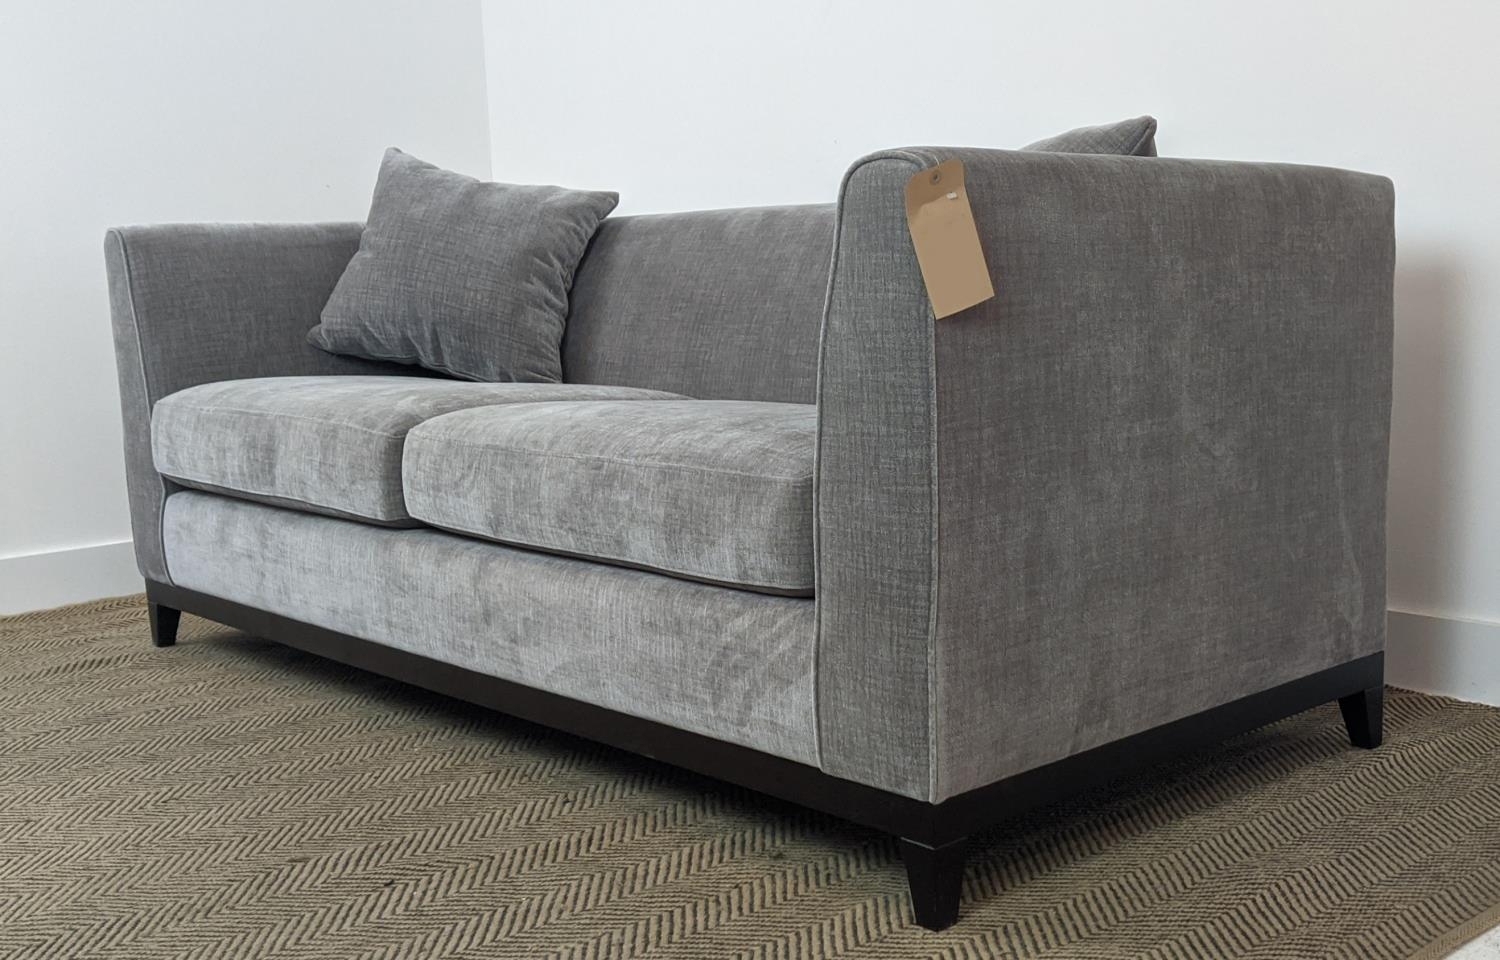 SOFA, dark grey upholstered, ebonised supports, 200cm x 85cm x 90cm. - Image 5 of 7